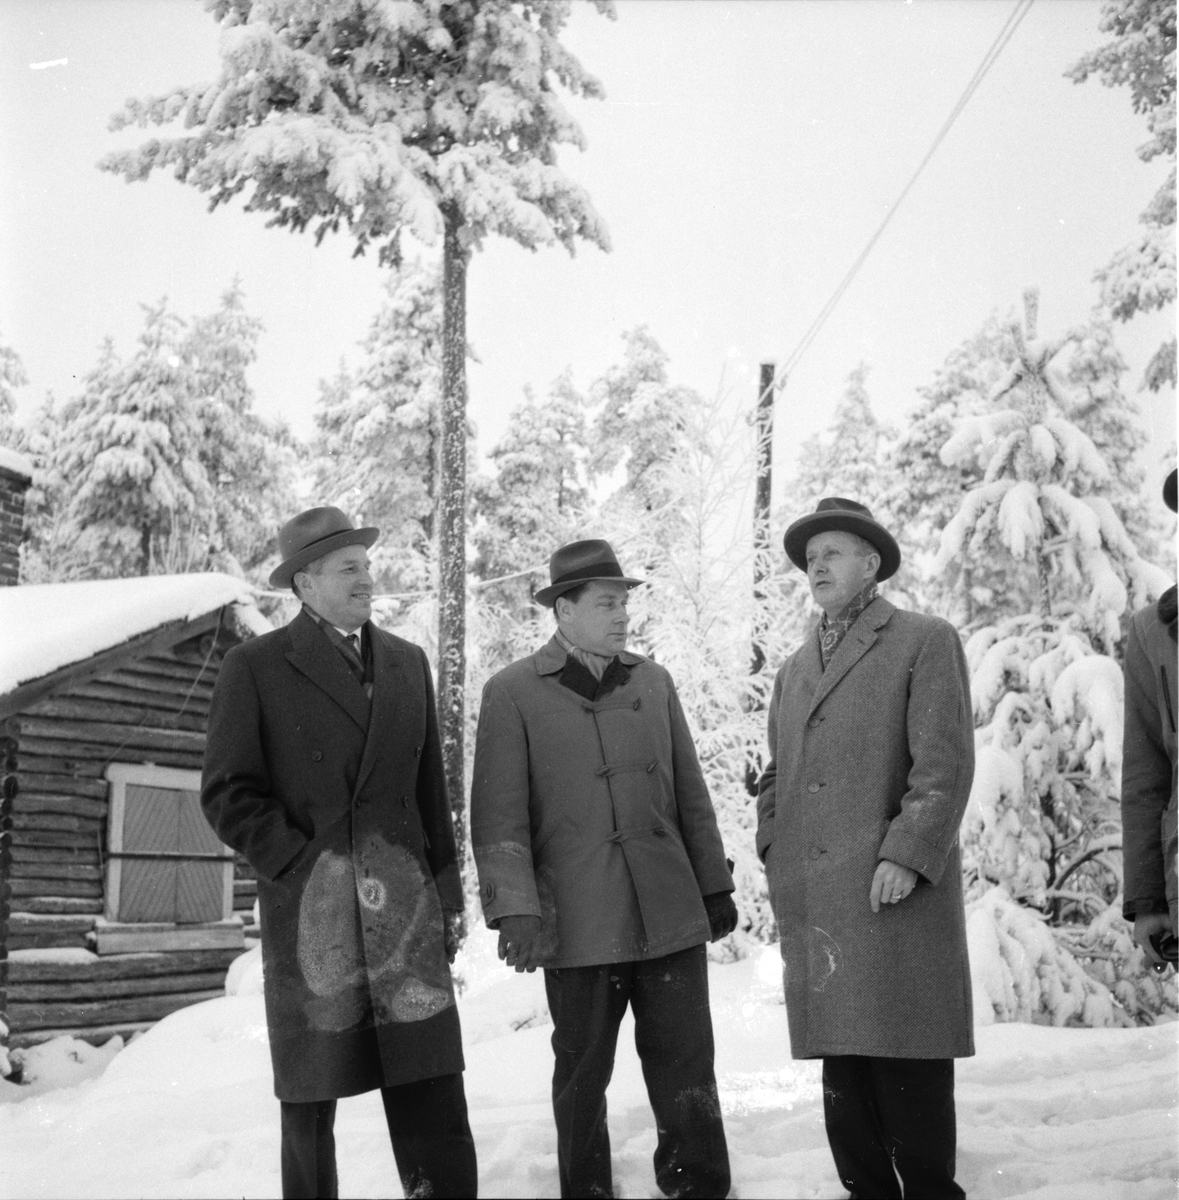 Bollnäs,
Bolleberget,
Finska, Danska gäster,
Tidningsmän,
31 December 1958